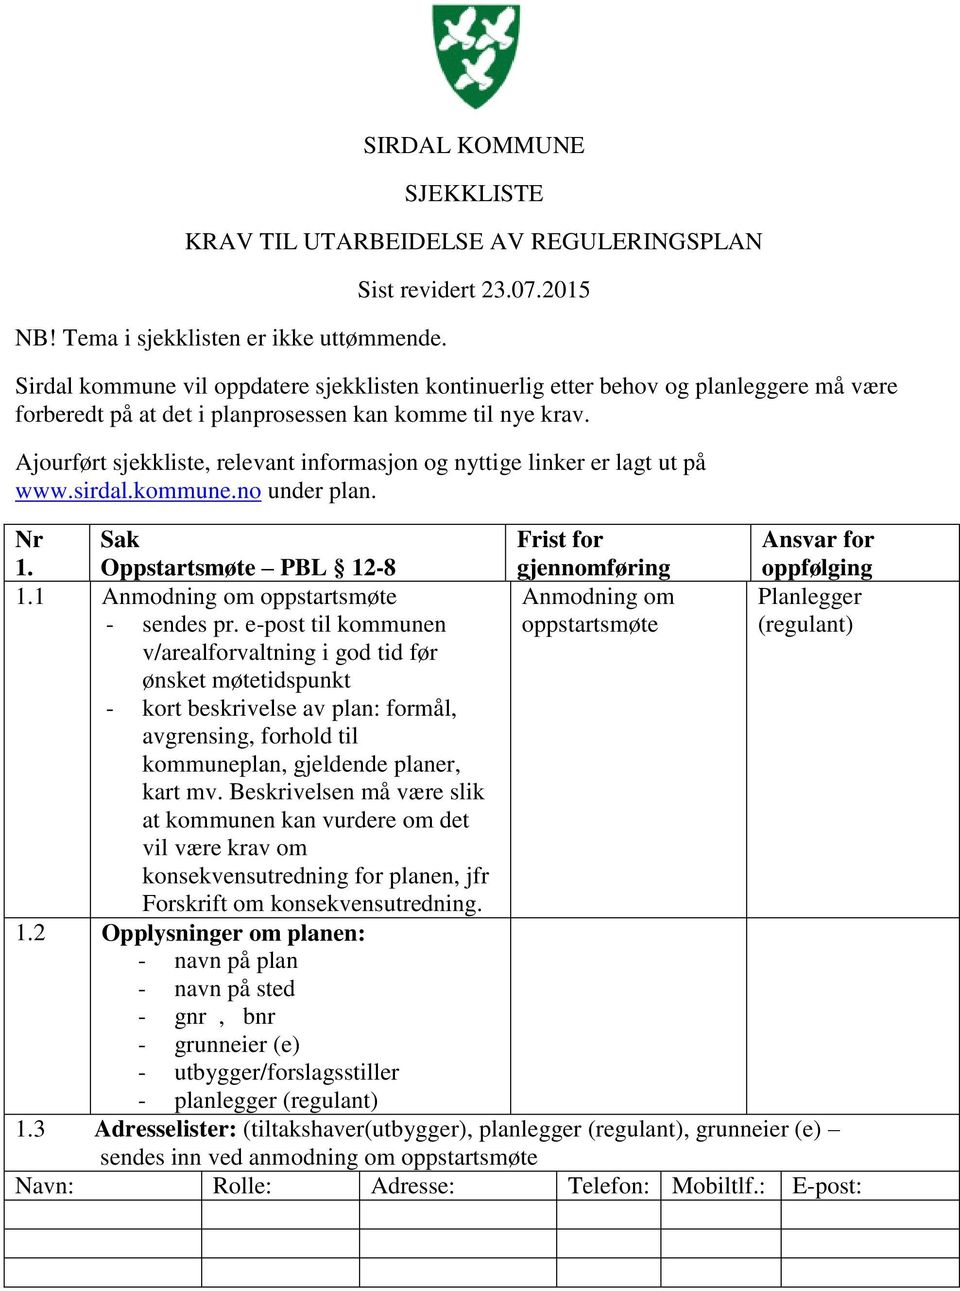 Ajourført sjekkliste, relevant informasjon og nyttige linker er lagt ut på www.sirdal.kommune.no under plan. Nr 1. Sak Oppstartsmøte PBL 12-8 Frist for gjennomføring Ansvar for oppfølging 1.